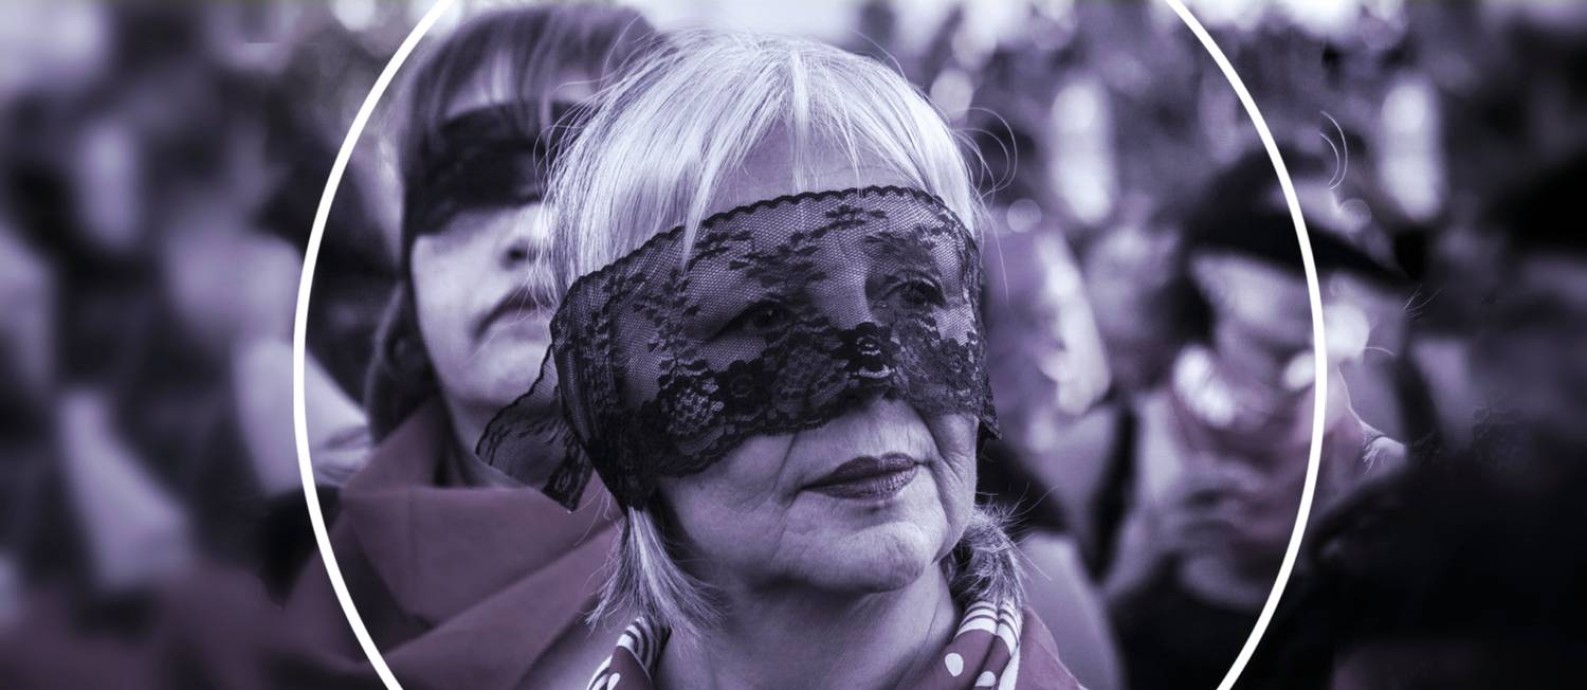 Manifestante na performance de "O violador em seu caminho", no Chile: mulheres adultas e avós são as principais participantes do protesto contra o patriarcado Foto: Foto de Gabriela García com arte de Ana Luiza Costa